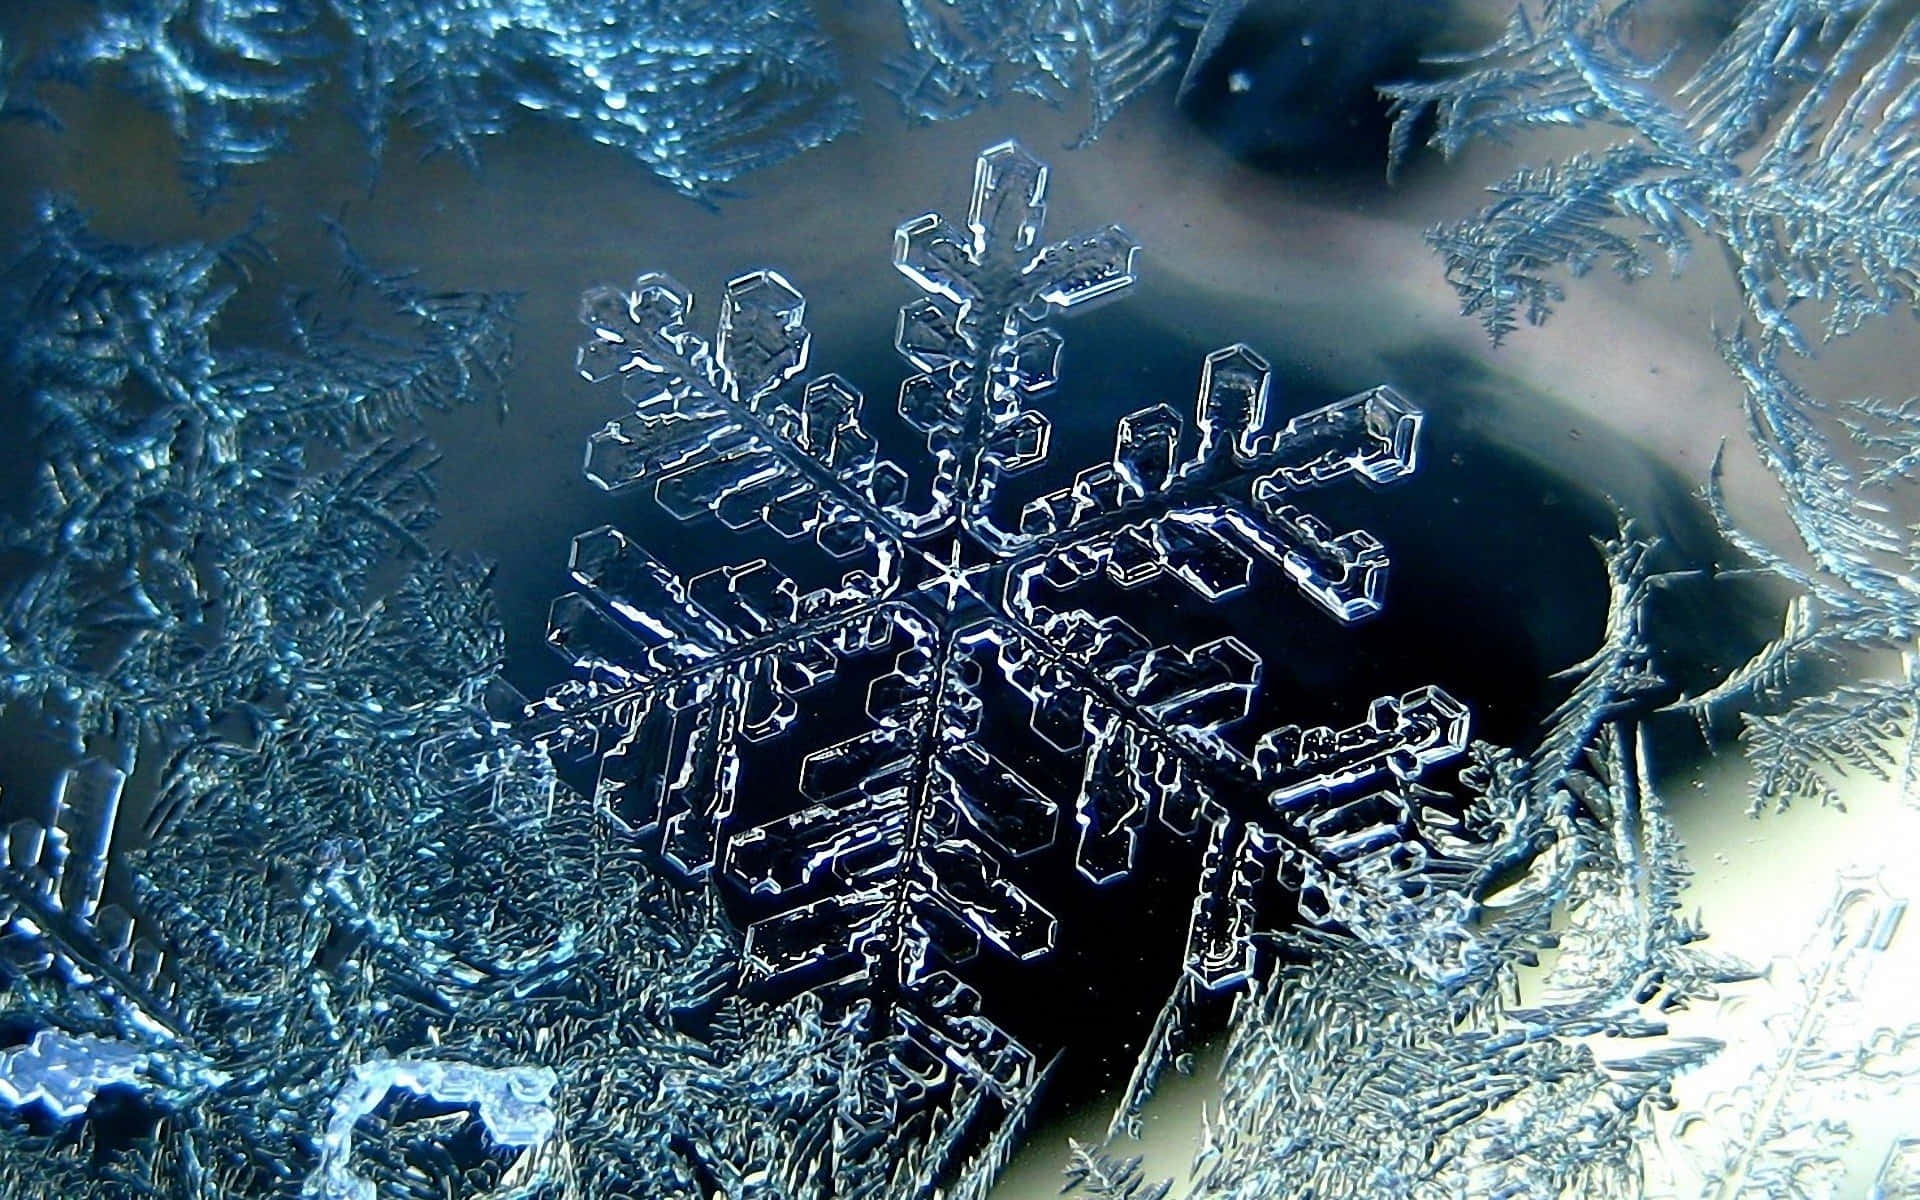 A unique snowflake up close.